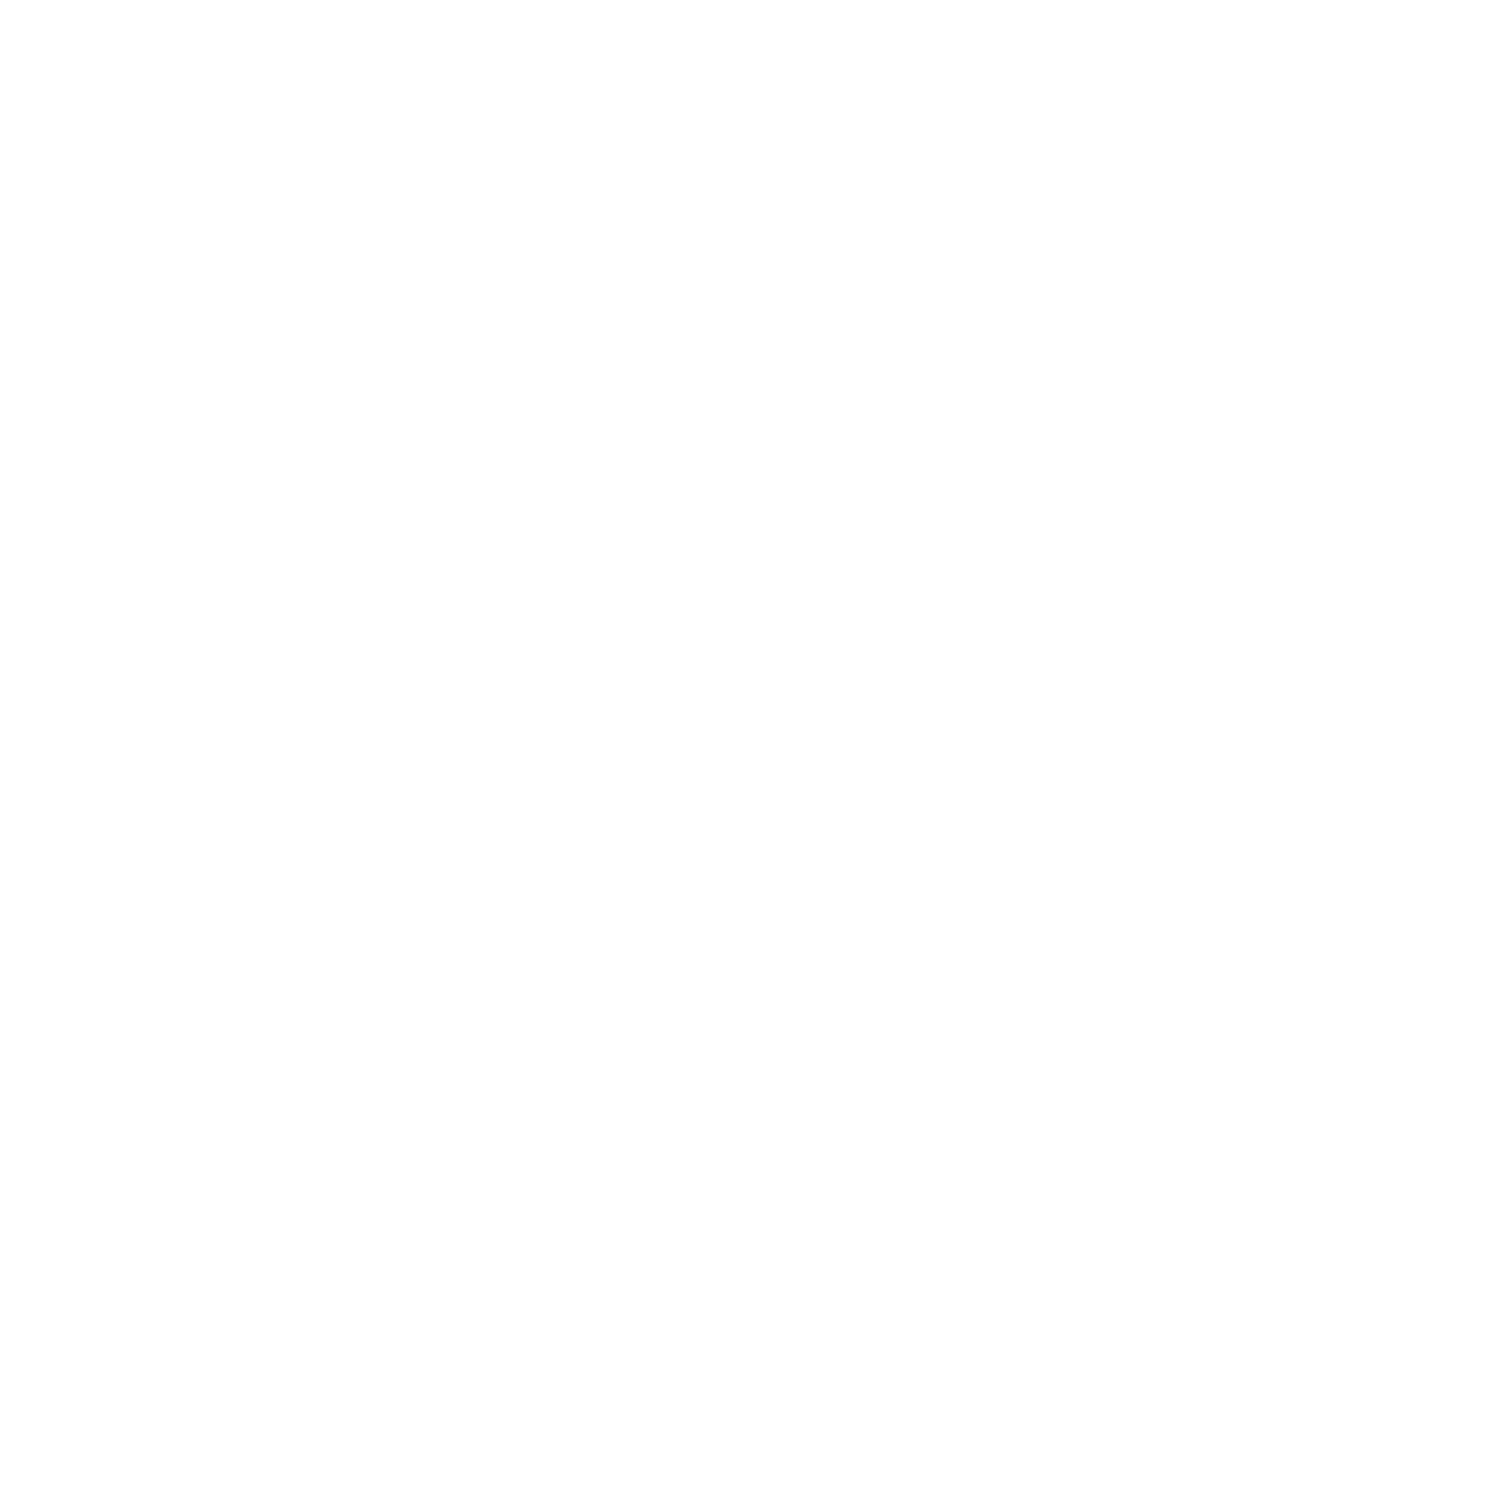 Bostown Music Fest